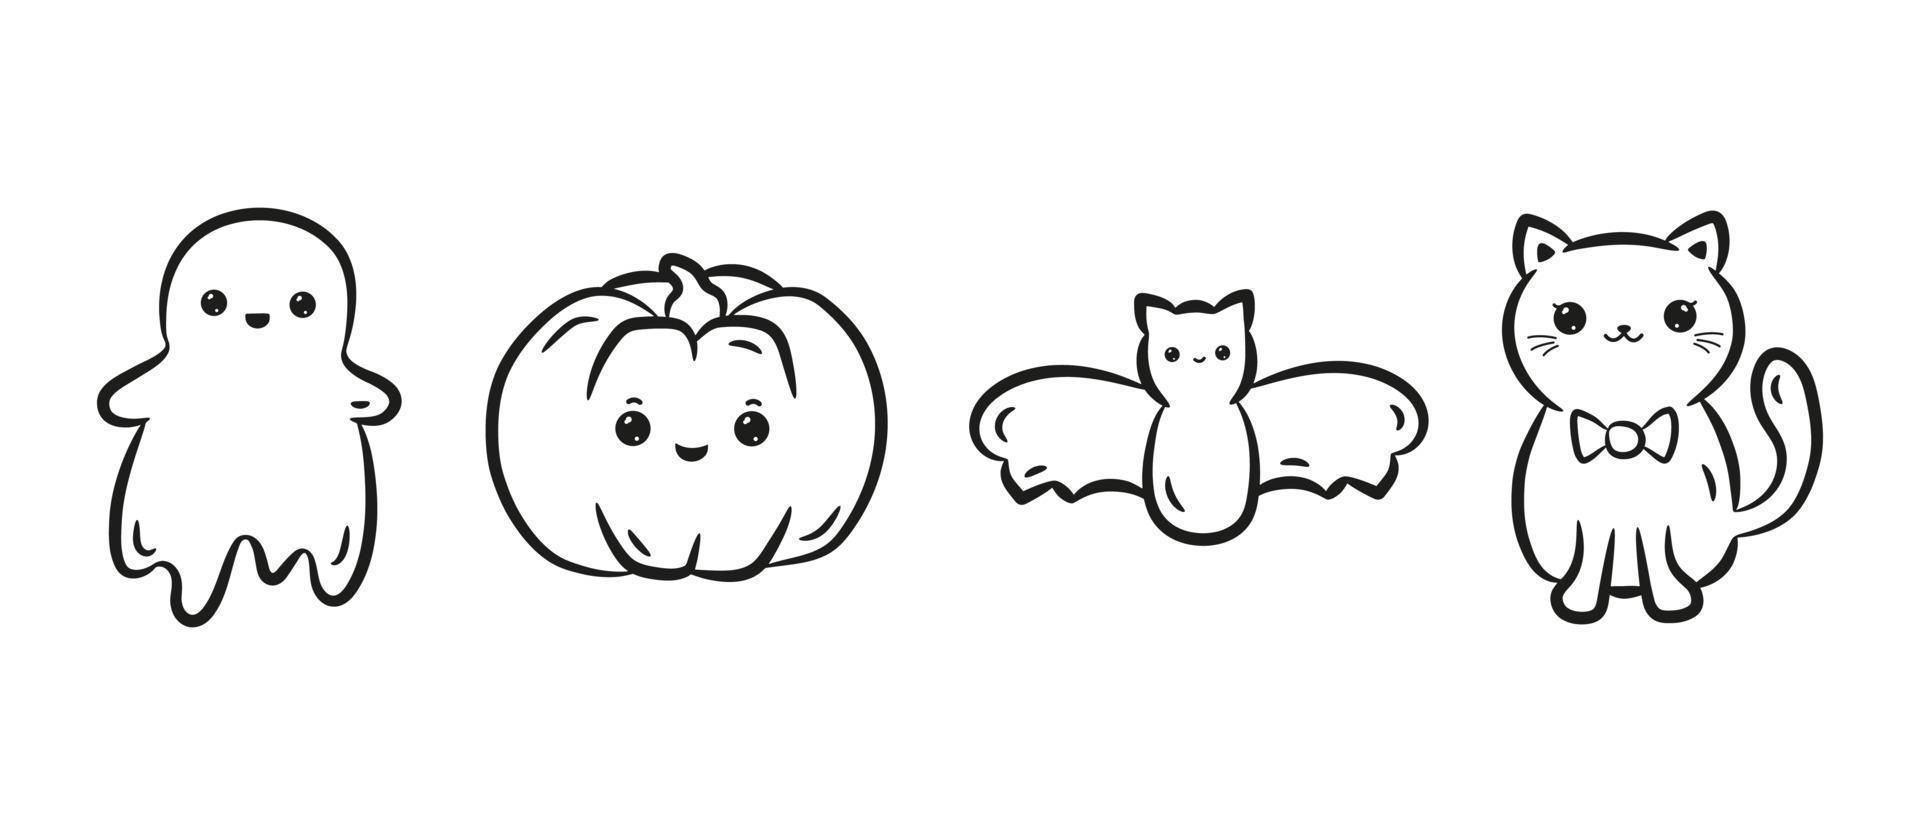 conjunto de personajes kawaii de halloween. colección de linda calabaza kawaii, gato, murciélago y fantasma en estilo de dibujo lineal negro. ilustración vectorial vector